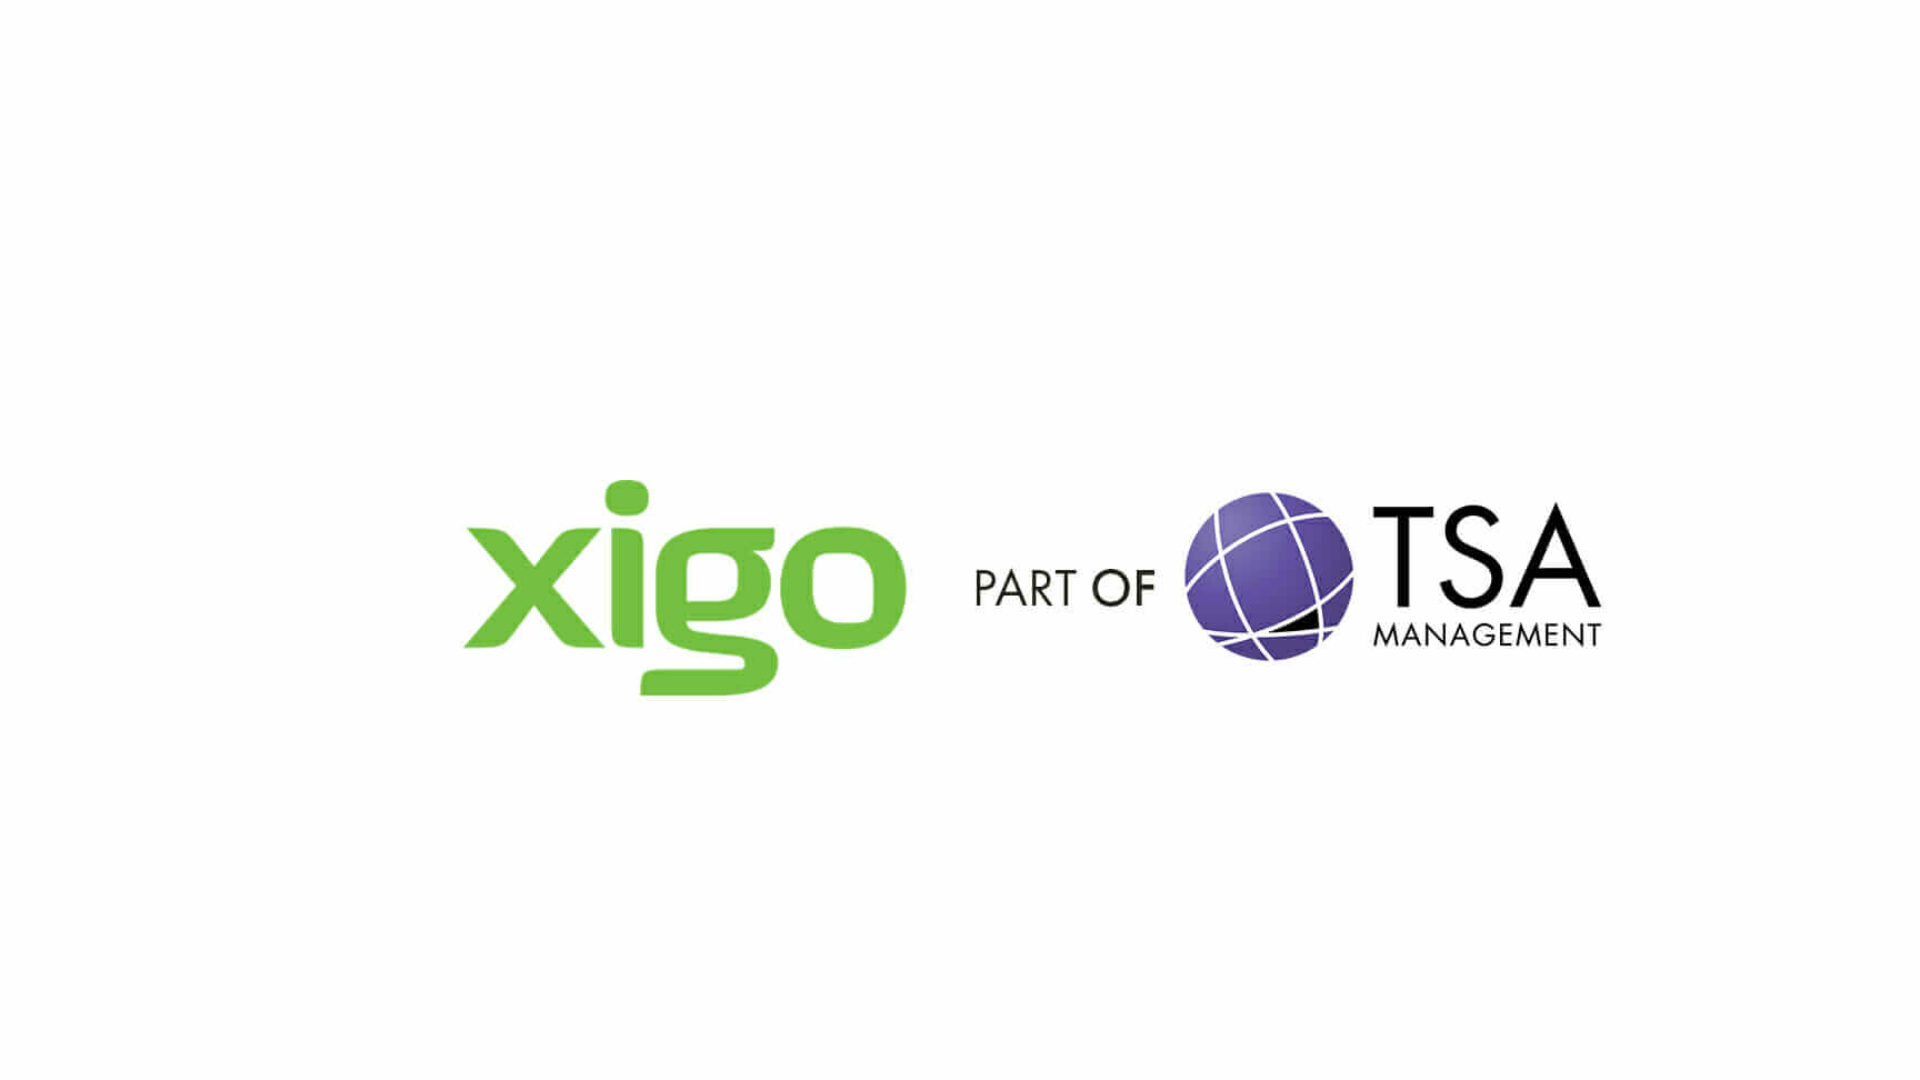 TSA marks its international presence with Xigo Partnership